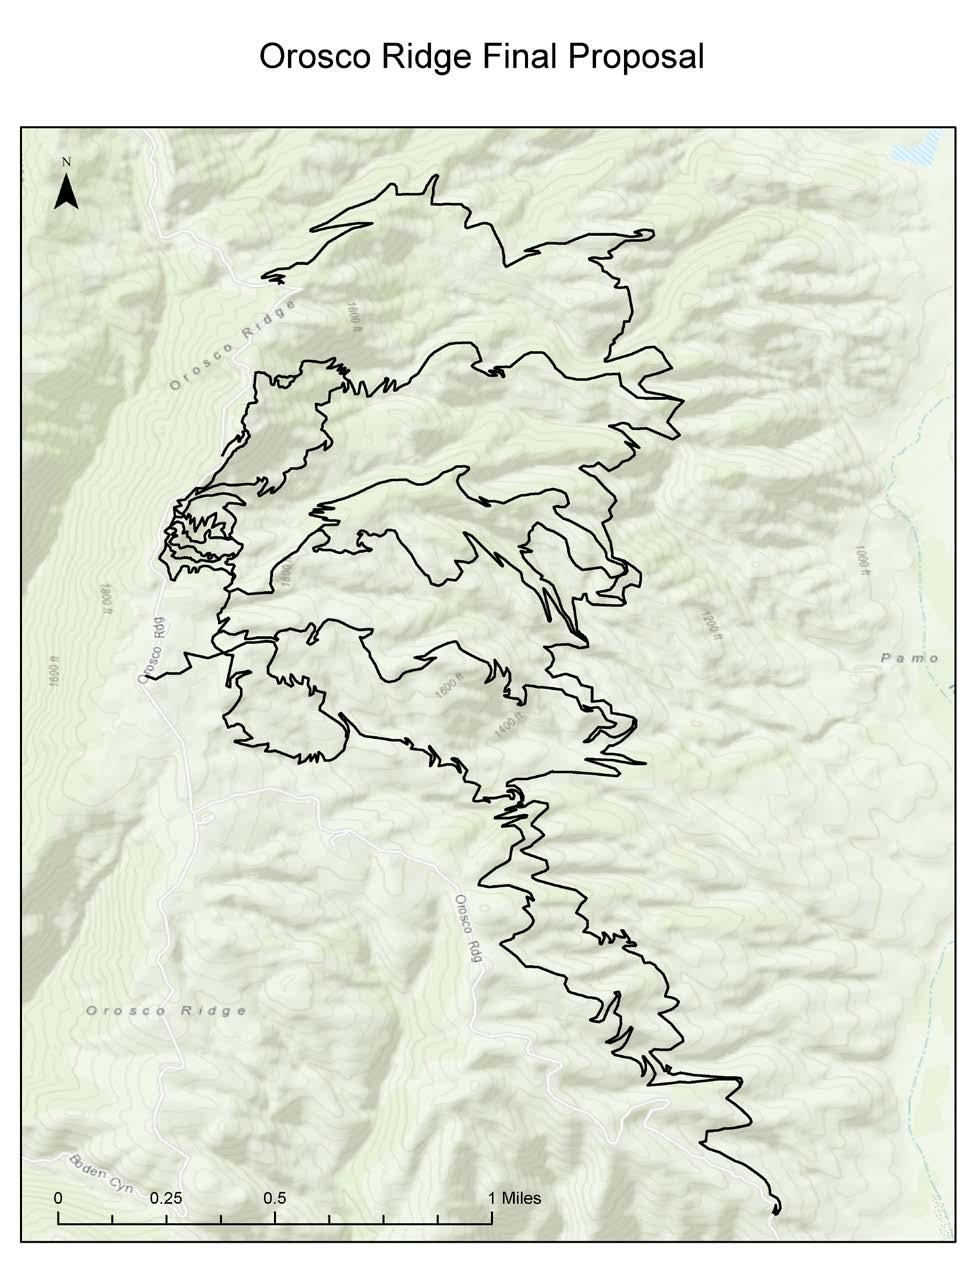 Proposed Action Orosco Ridge Mountain Bike Trail System